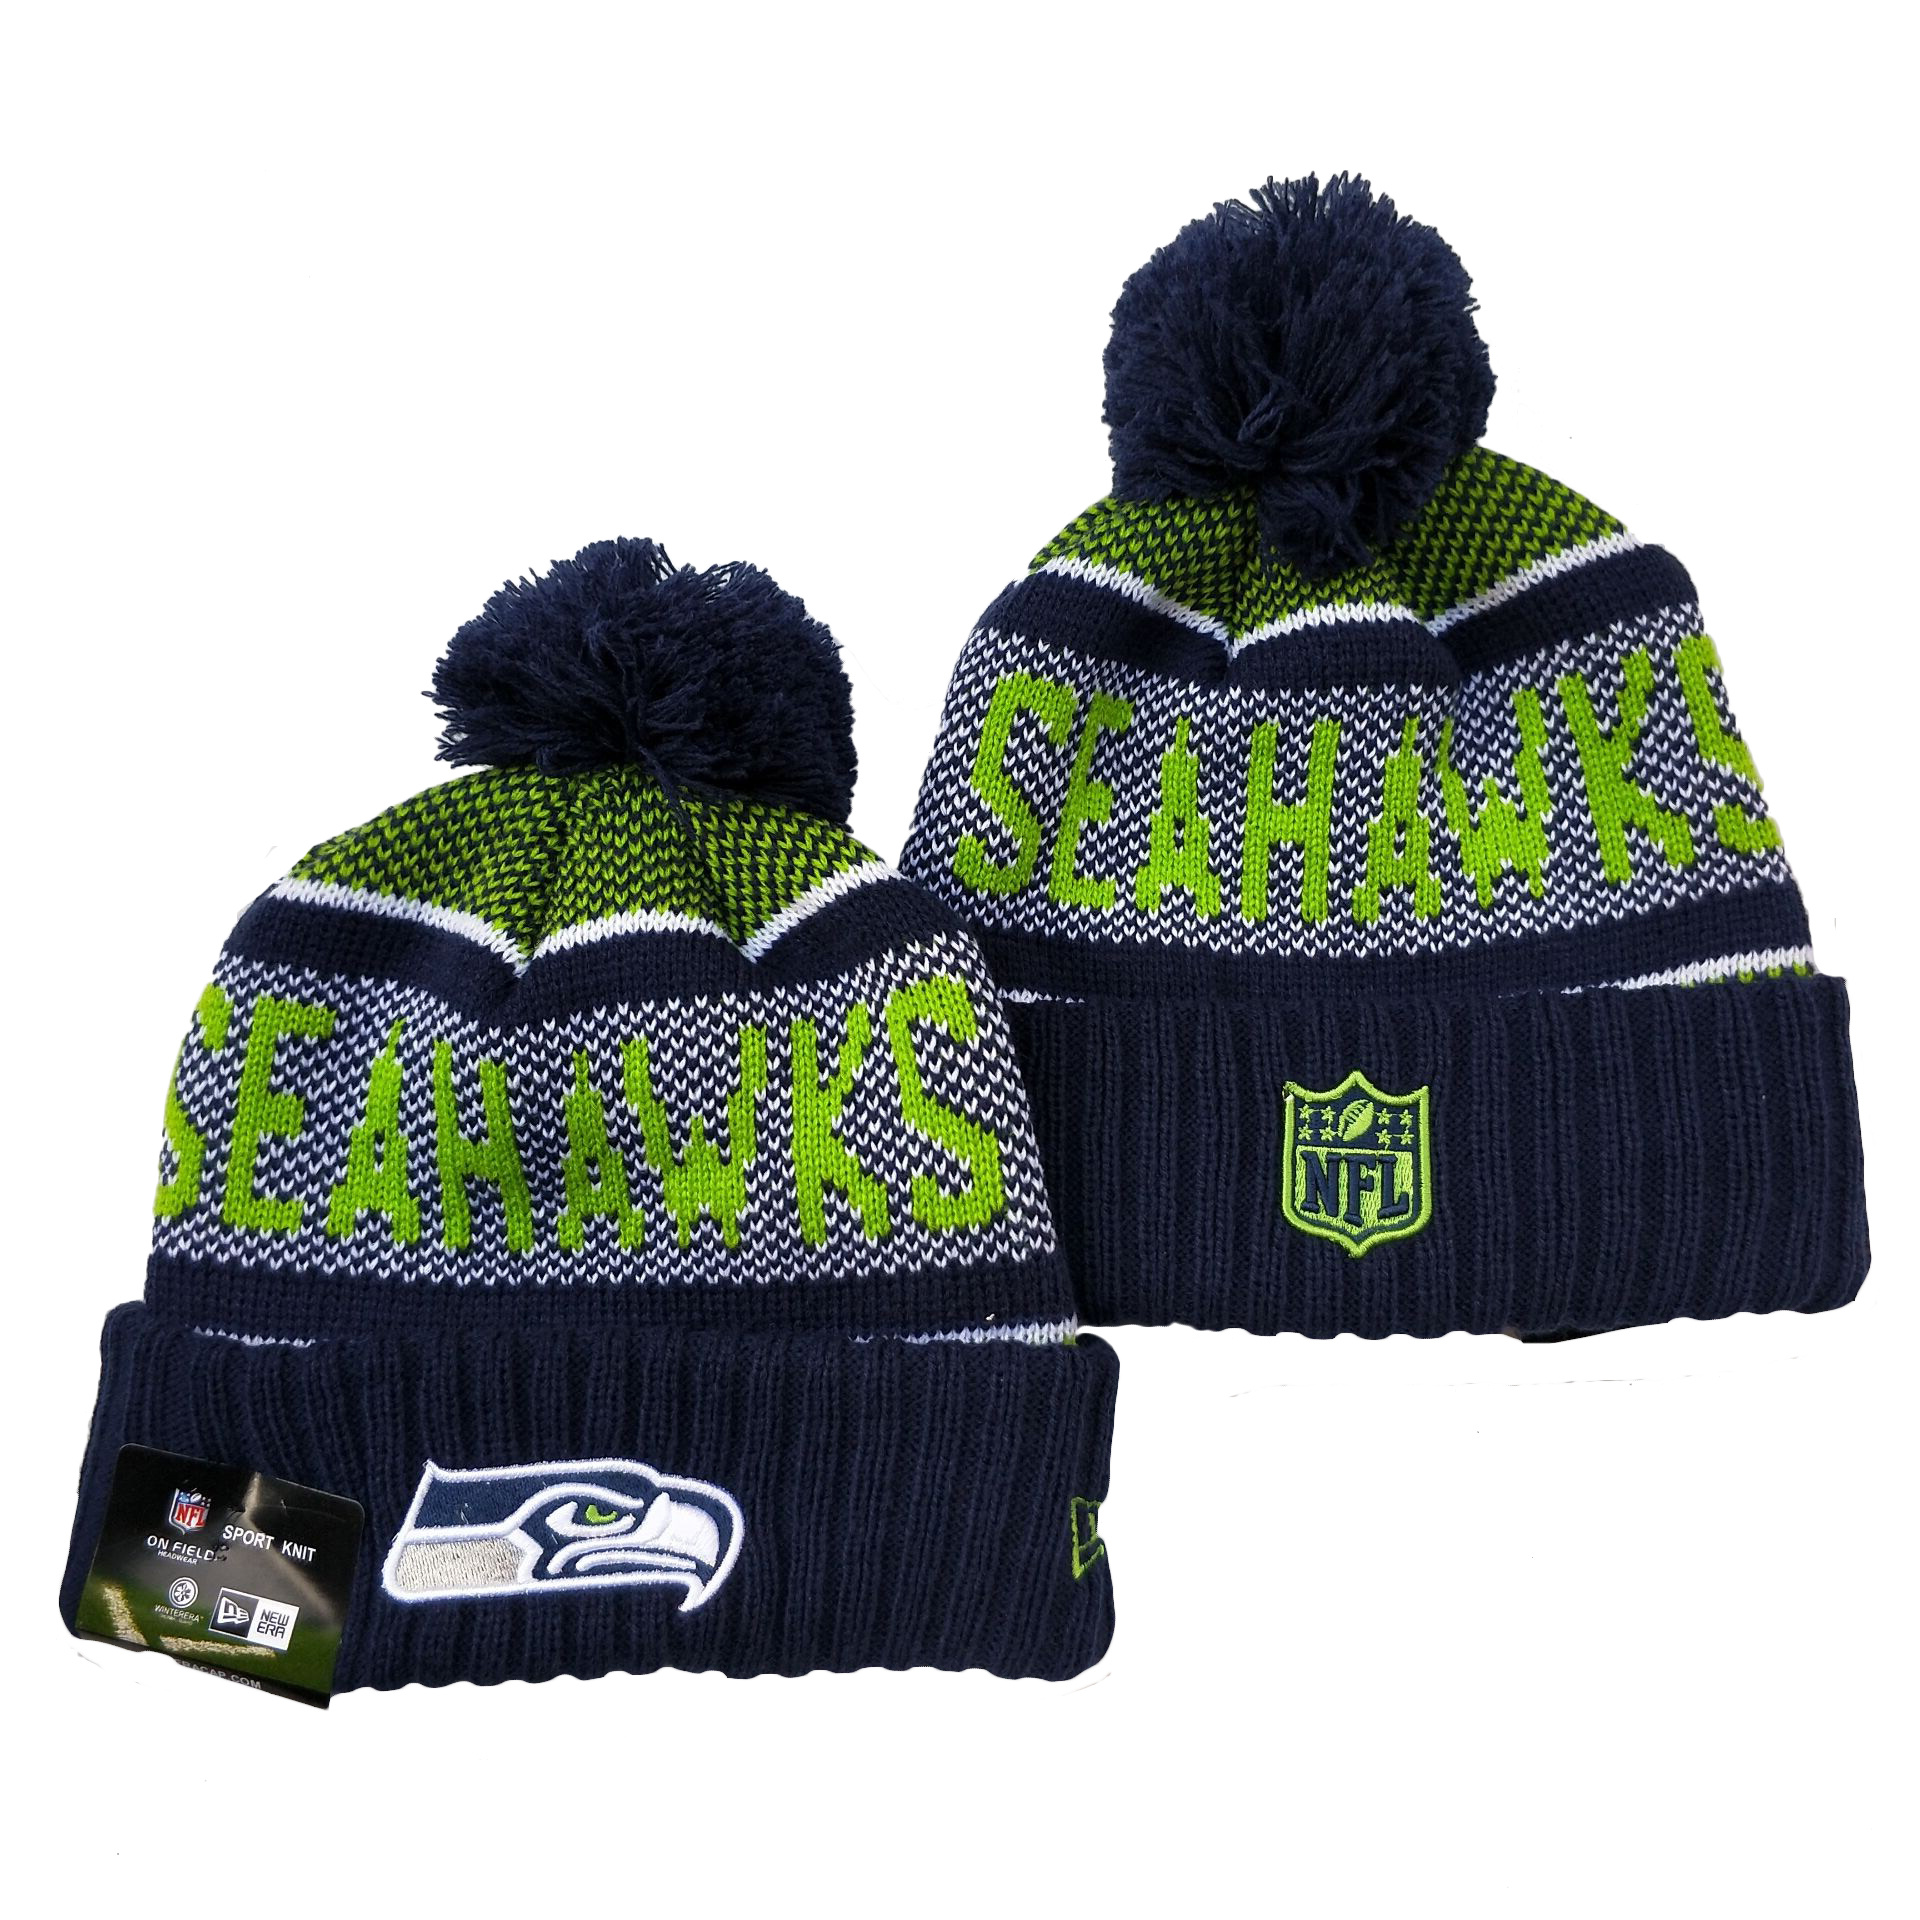 Seattle Seahawks Knit Hats 043